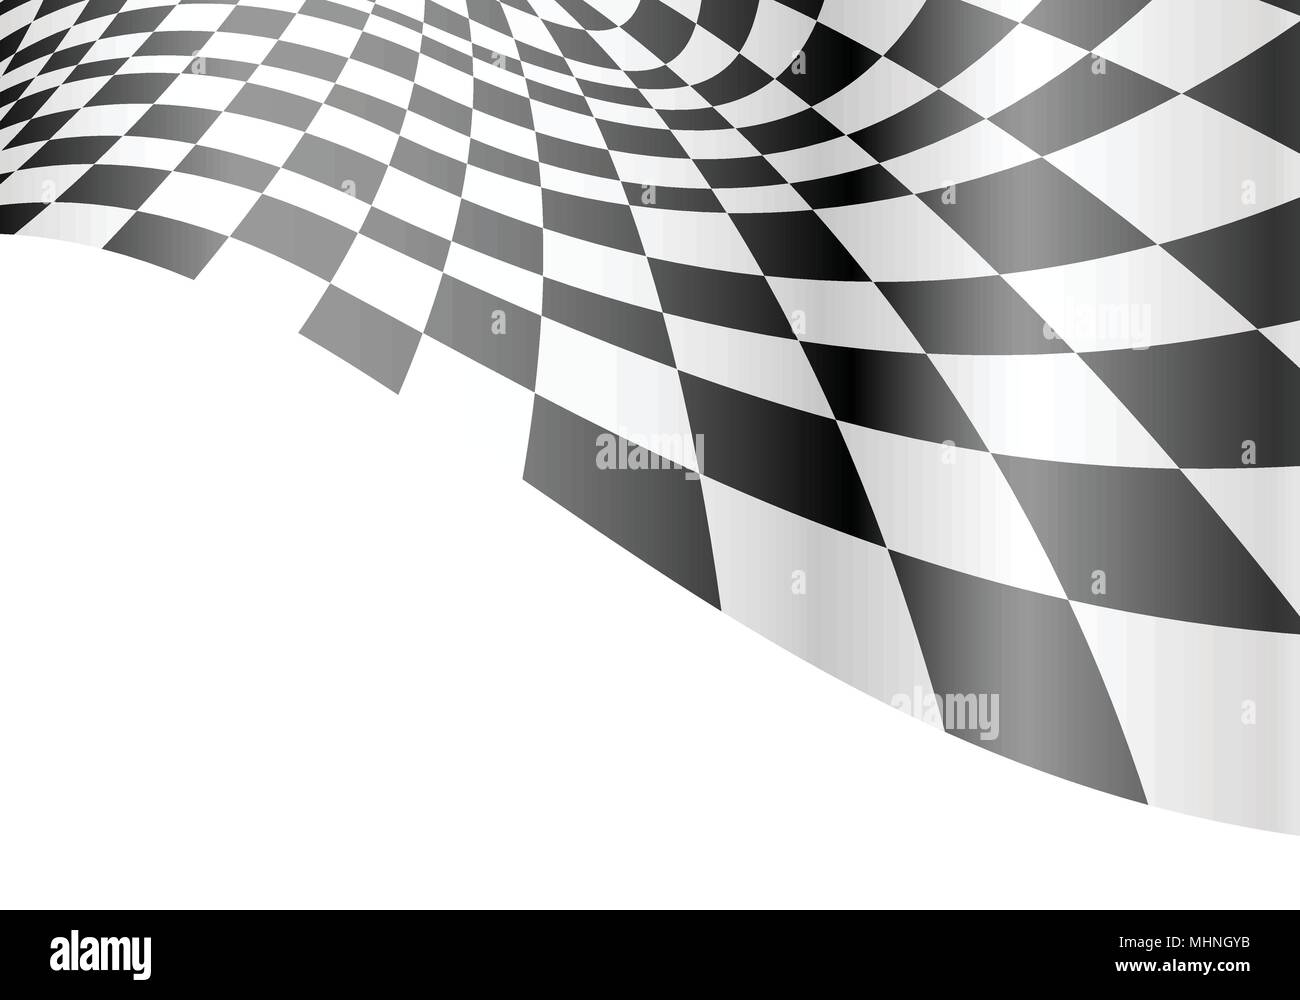 Zielflagge wave auf weißem Design race Hintergrund Vector Illustration. Stock Vektor